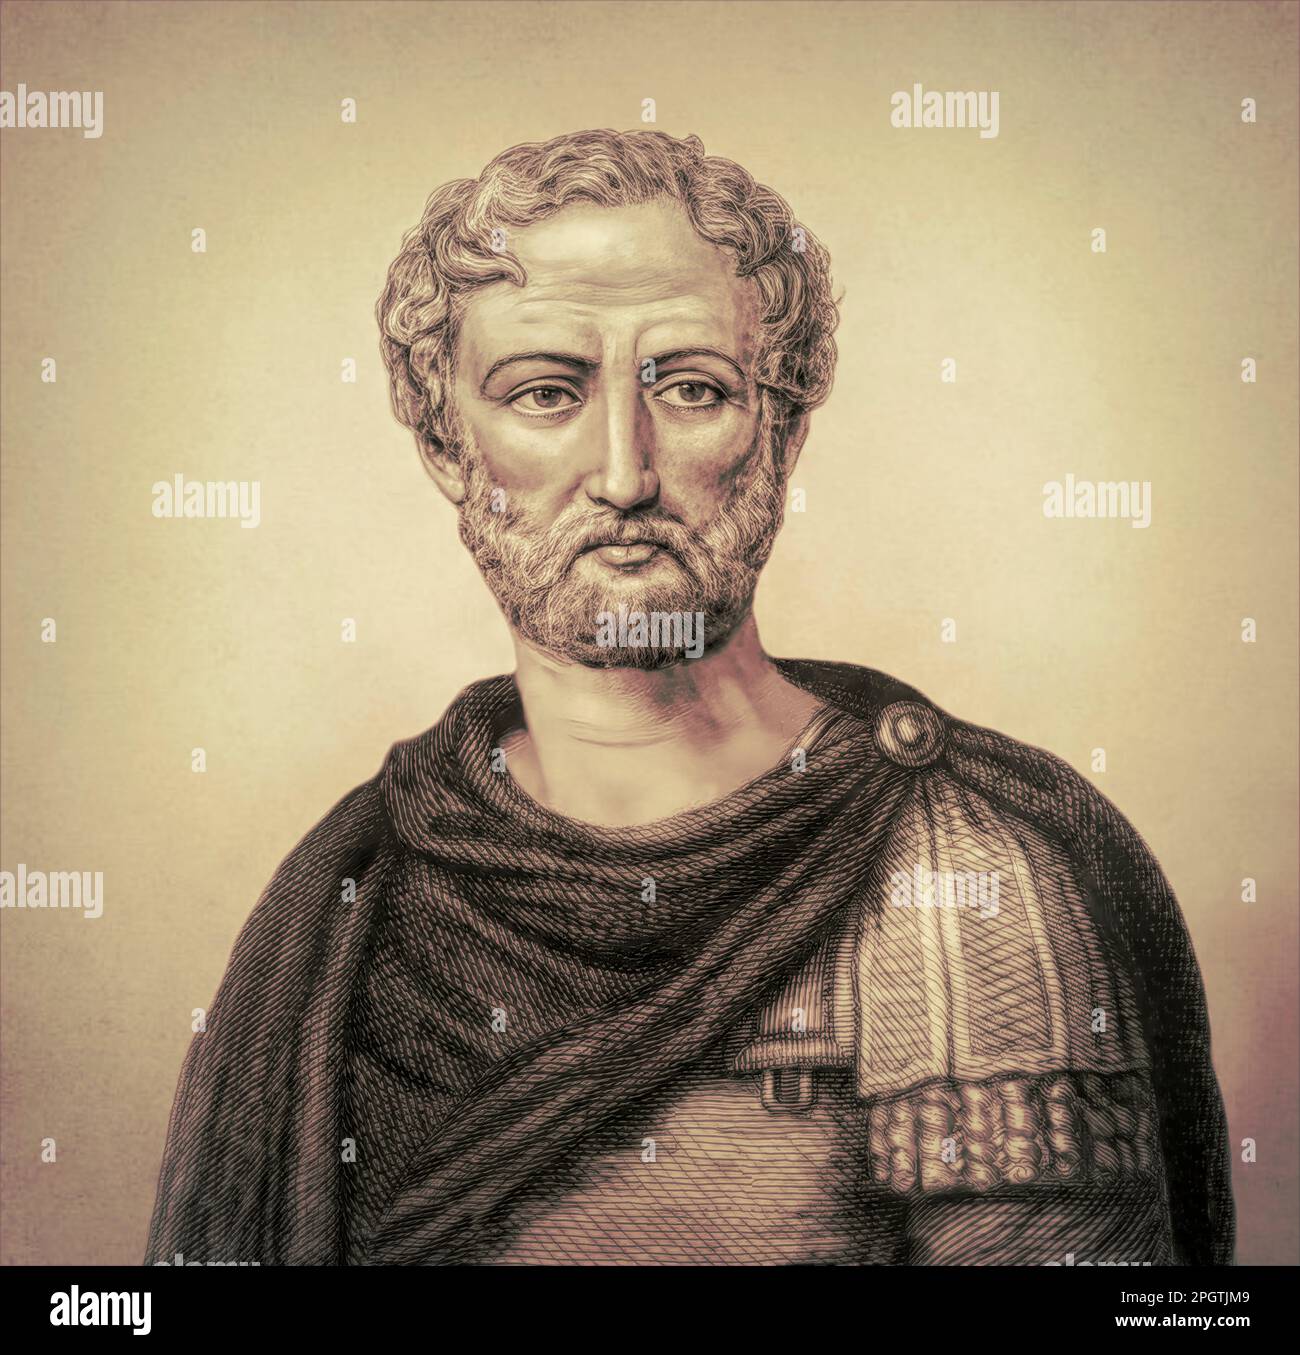 Gaius Plinius Secundus, d.C. 23/24 – 79, chiamato Plinio il Vecchio, autore romano, modificato digitalmente Foto Stock